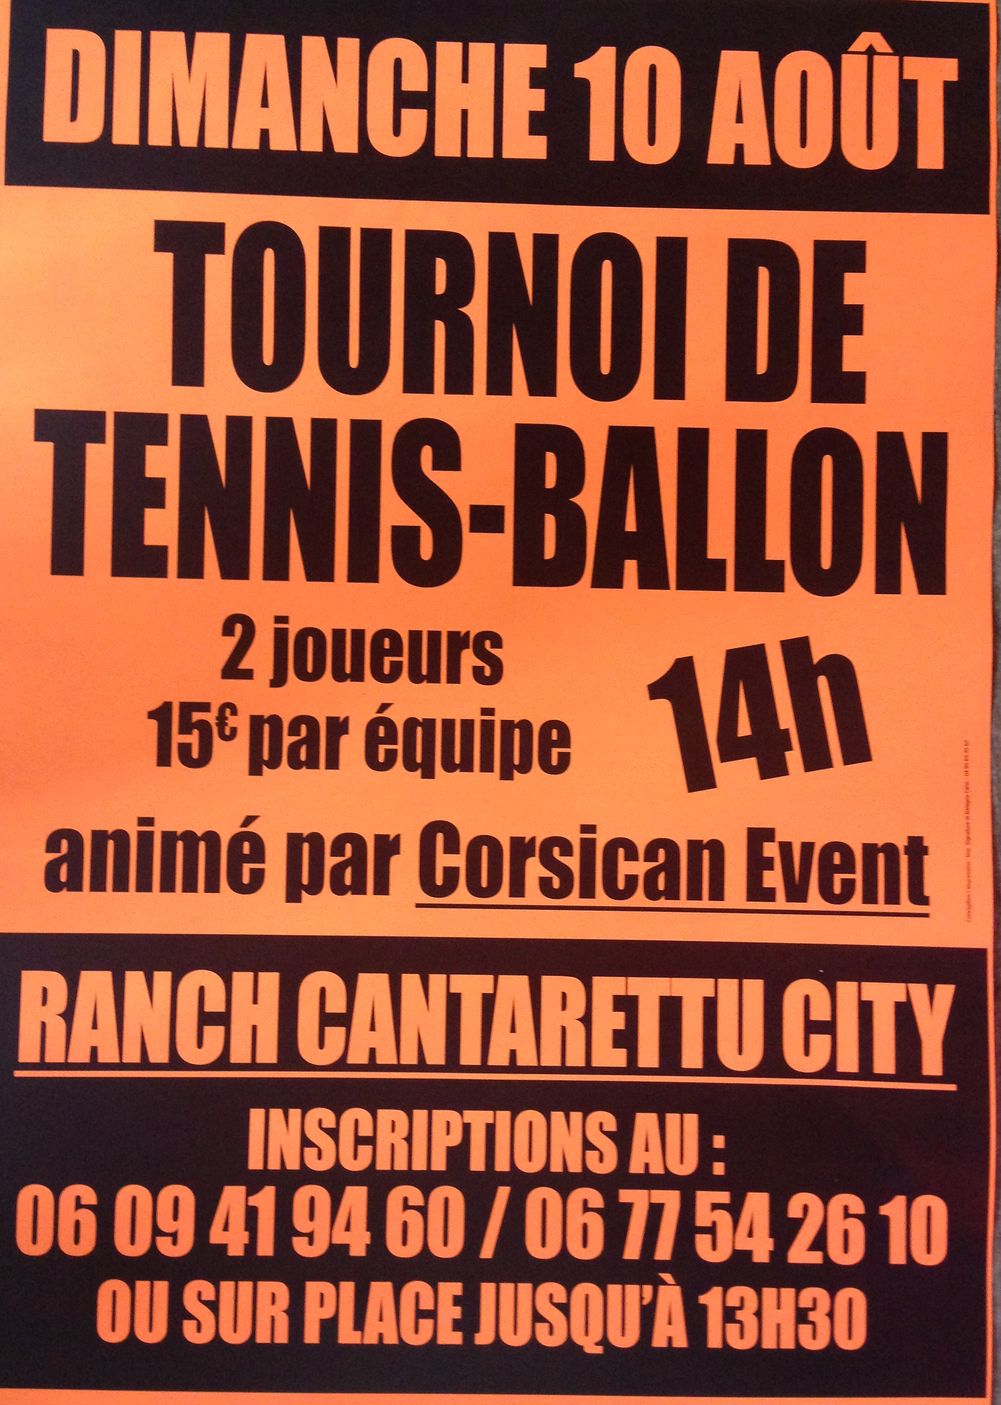 Tournoi de Tennis-Ballon au Cantarettu City d'Algajola-Corbara